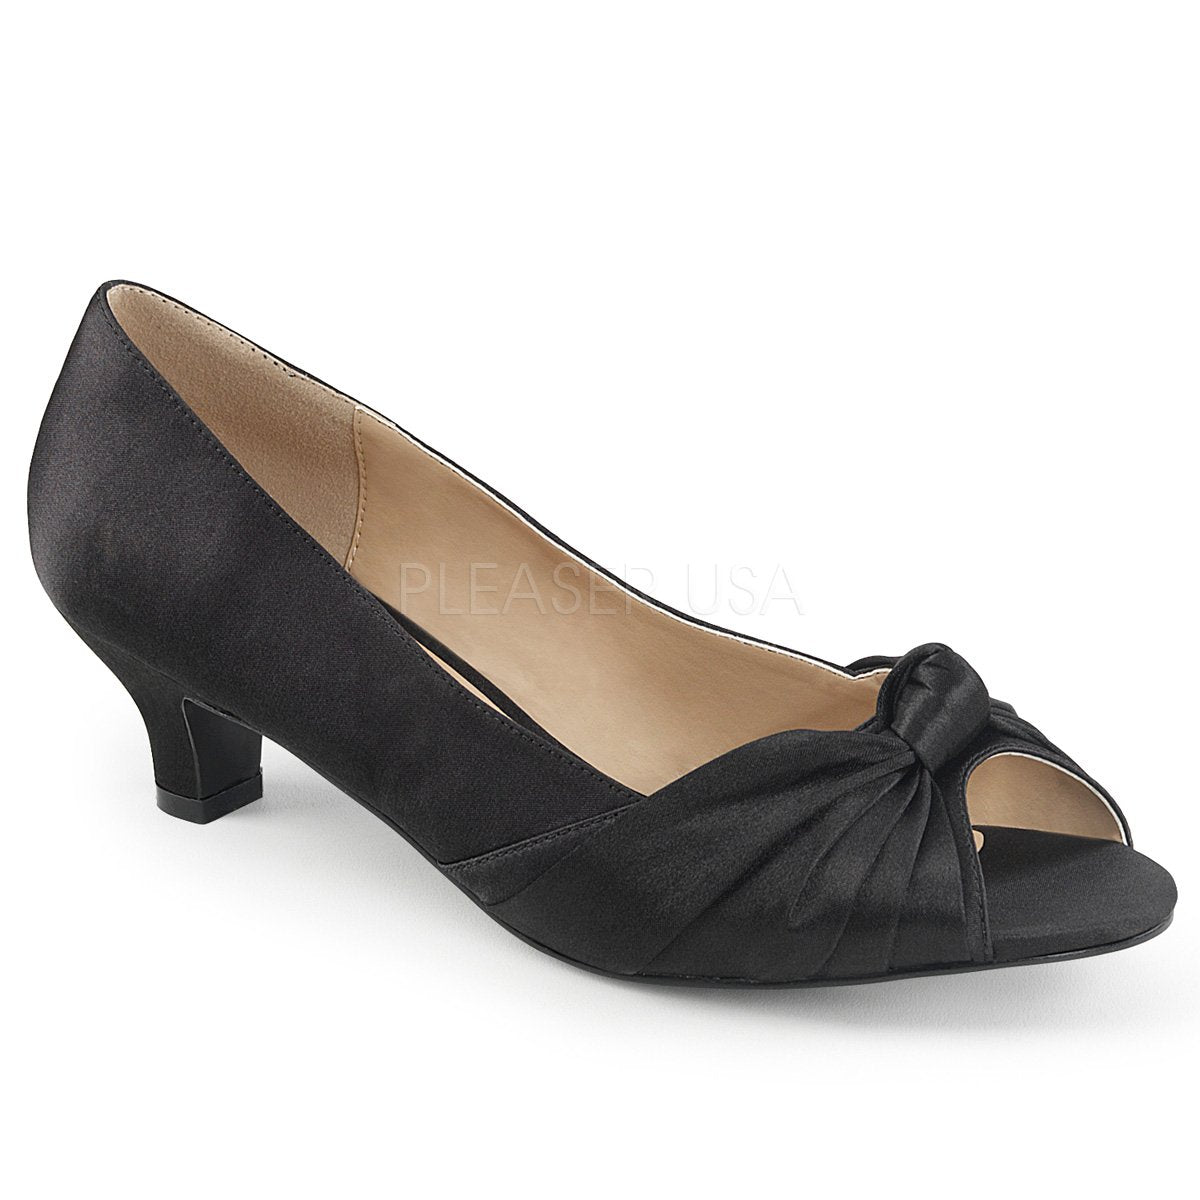 Black & White Mid-Low Heels, Kitten Heels, Short Heels | Lulus | Ankle  strap pumps, Strap pumps, Ankle strap heels